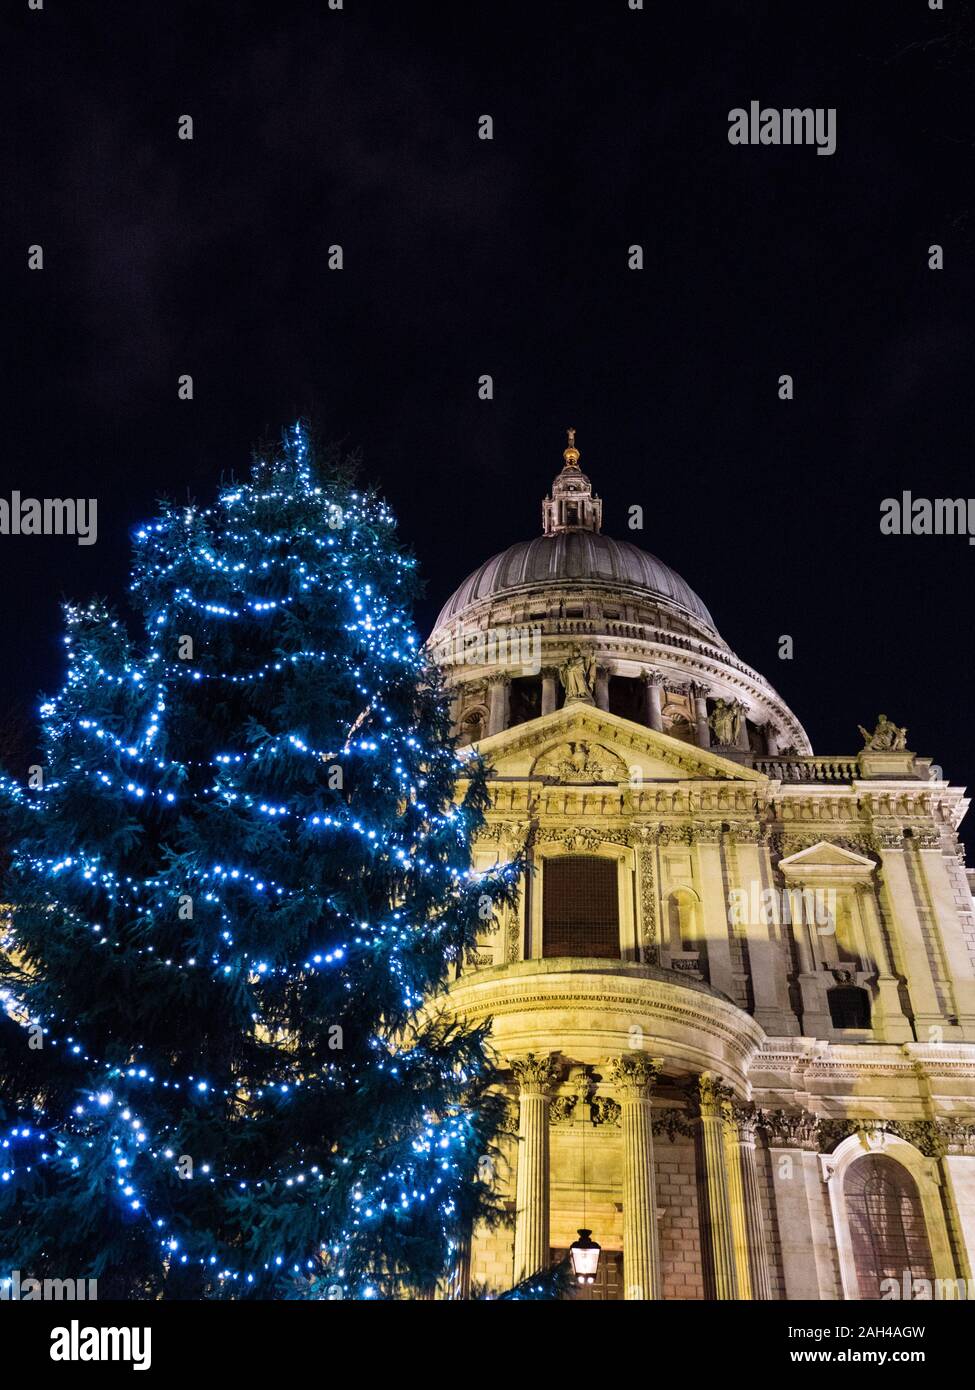 Arbre de Noël, la Cathédrale St Paul, nuit, London, England, UK,GO. Banque D'Images